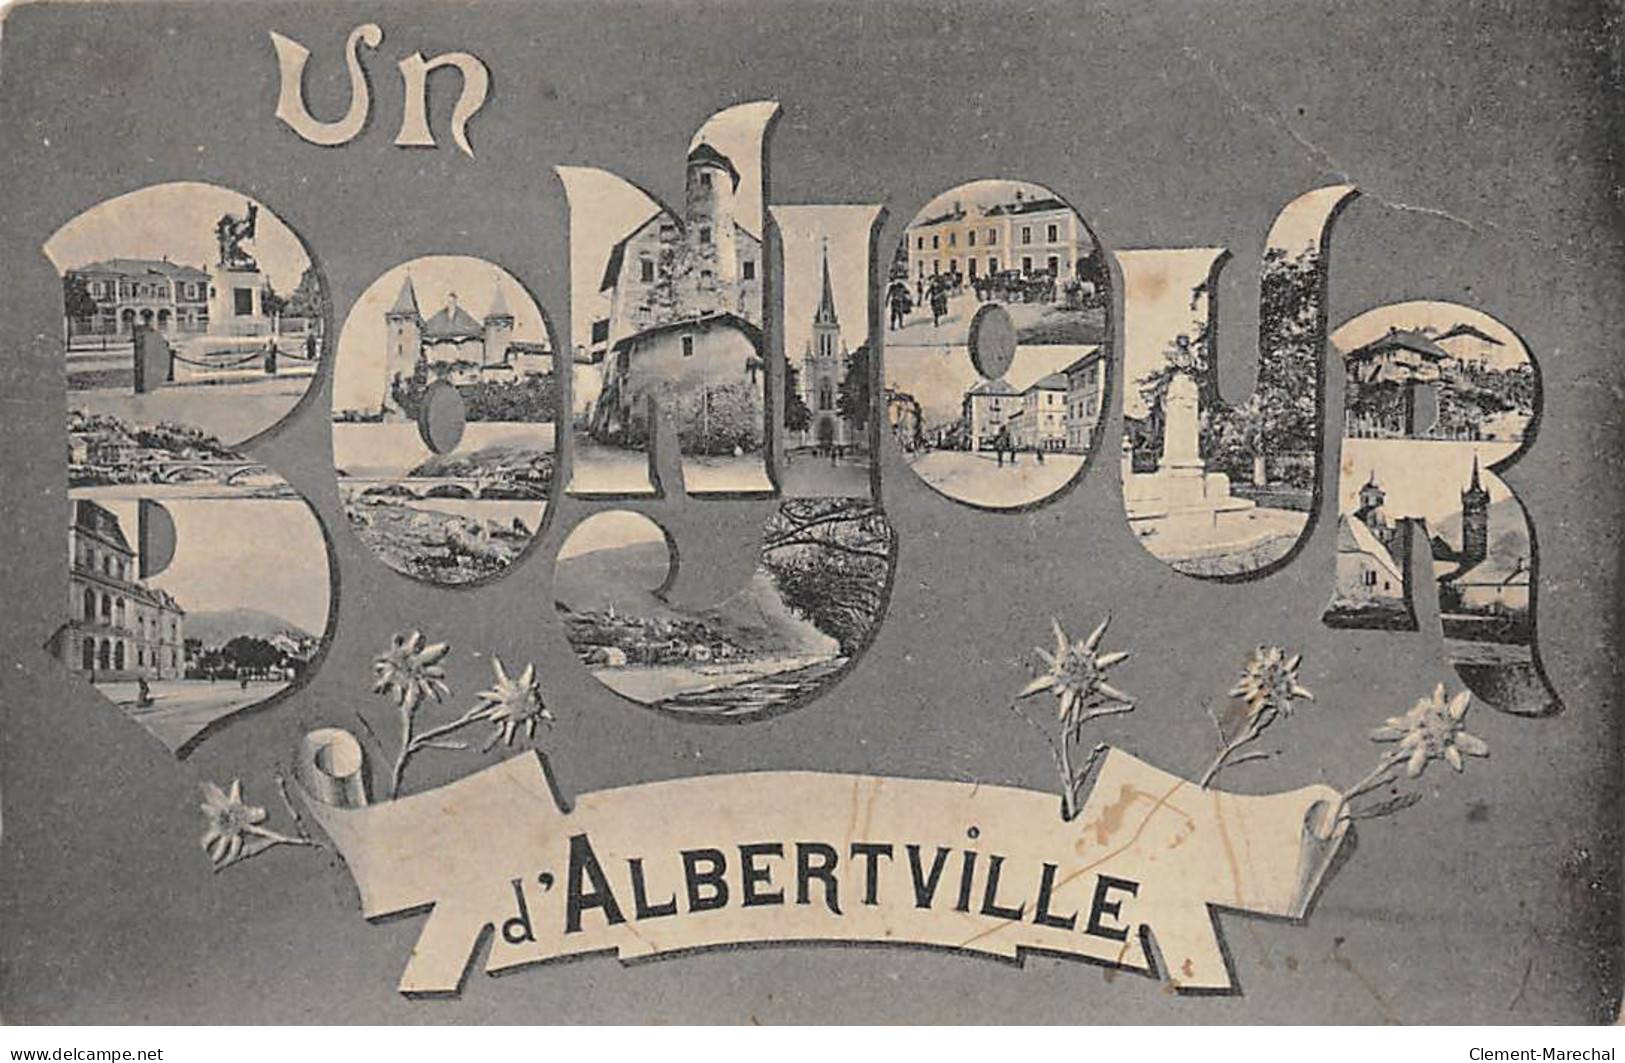 Un Bonjour D'ALBERTVILLE - Très Bon état - Albertville